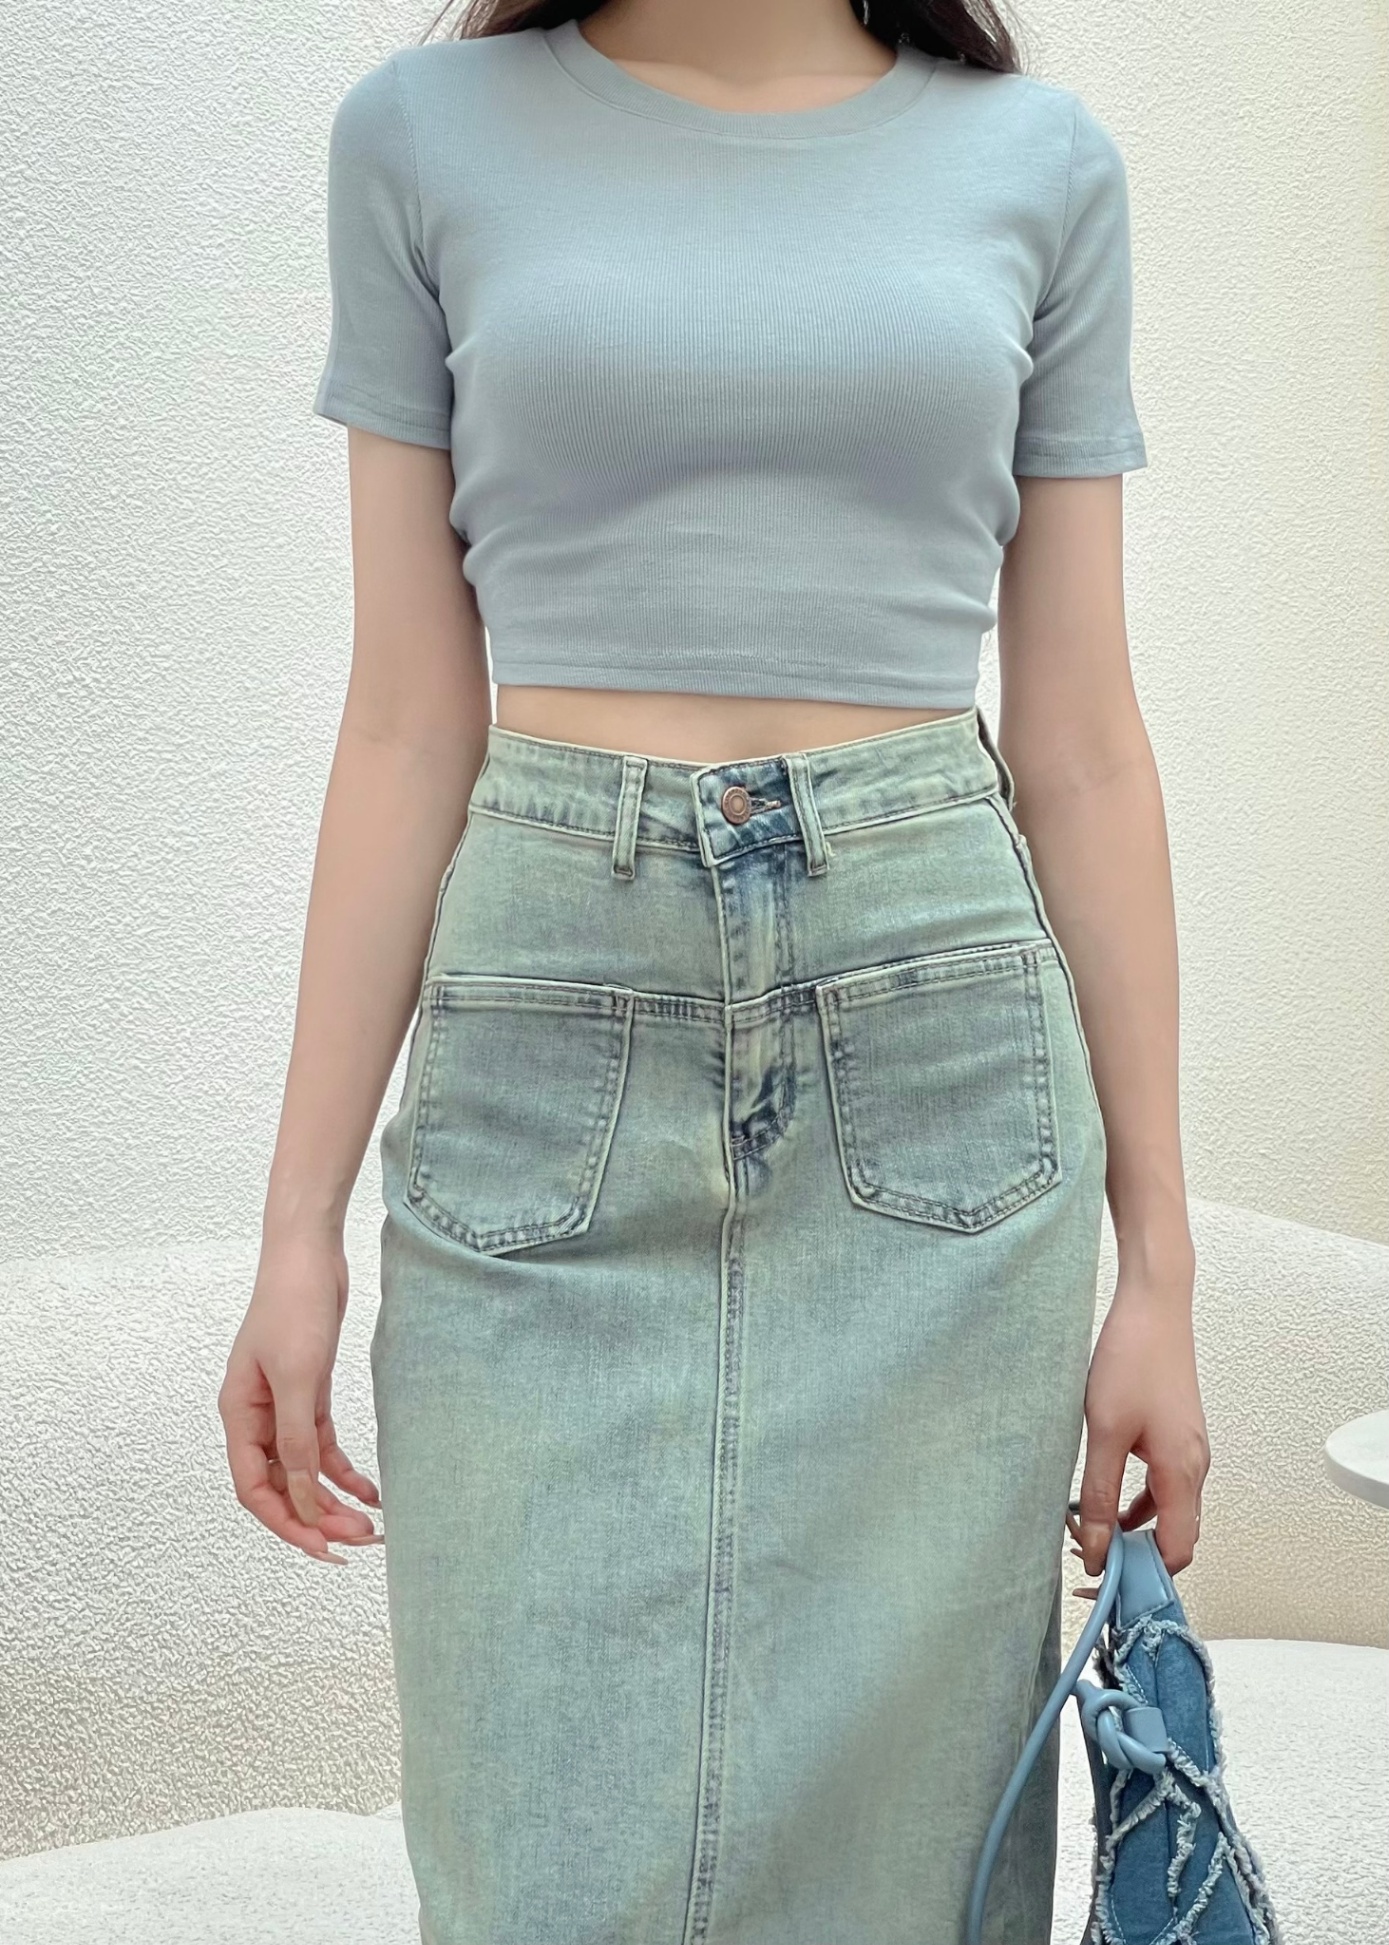 Chân Váy Jeans Dáng Dài, Cài Khuy, Co Dãn 3175 | Jeans Style